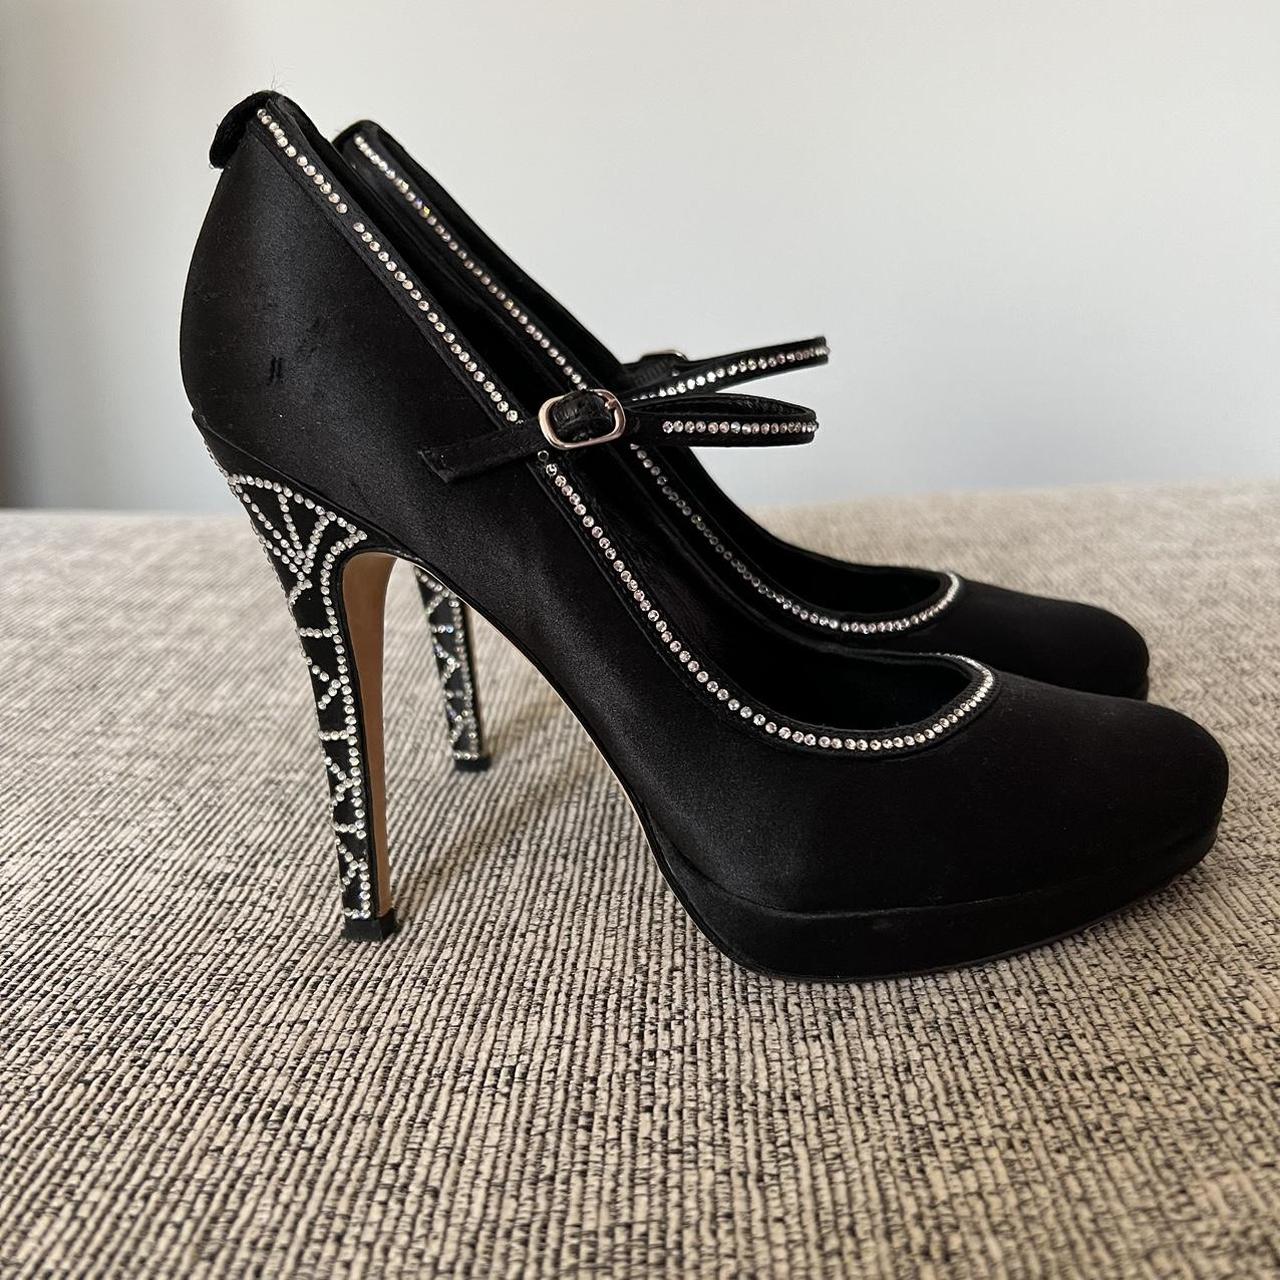 Karen Millen black and diamanté heels, size 5. Worn... - Depop